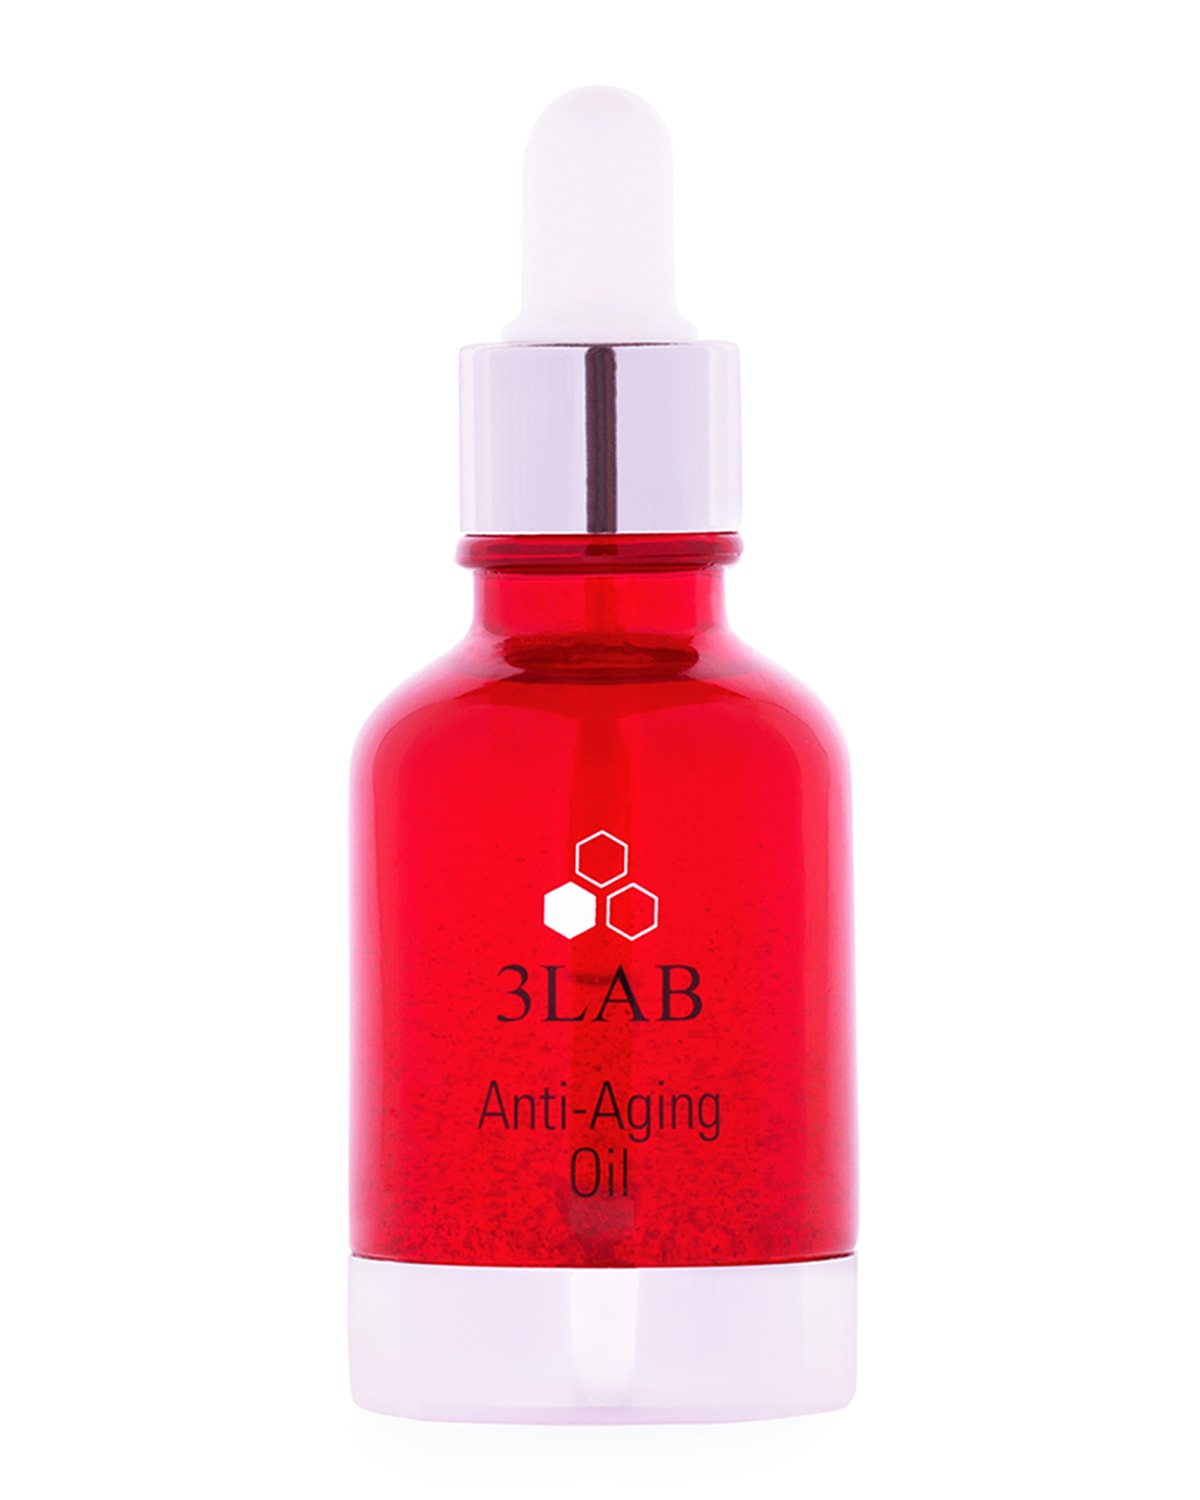 Anti-Aging Oil, 1 oz.